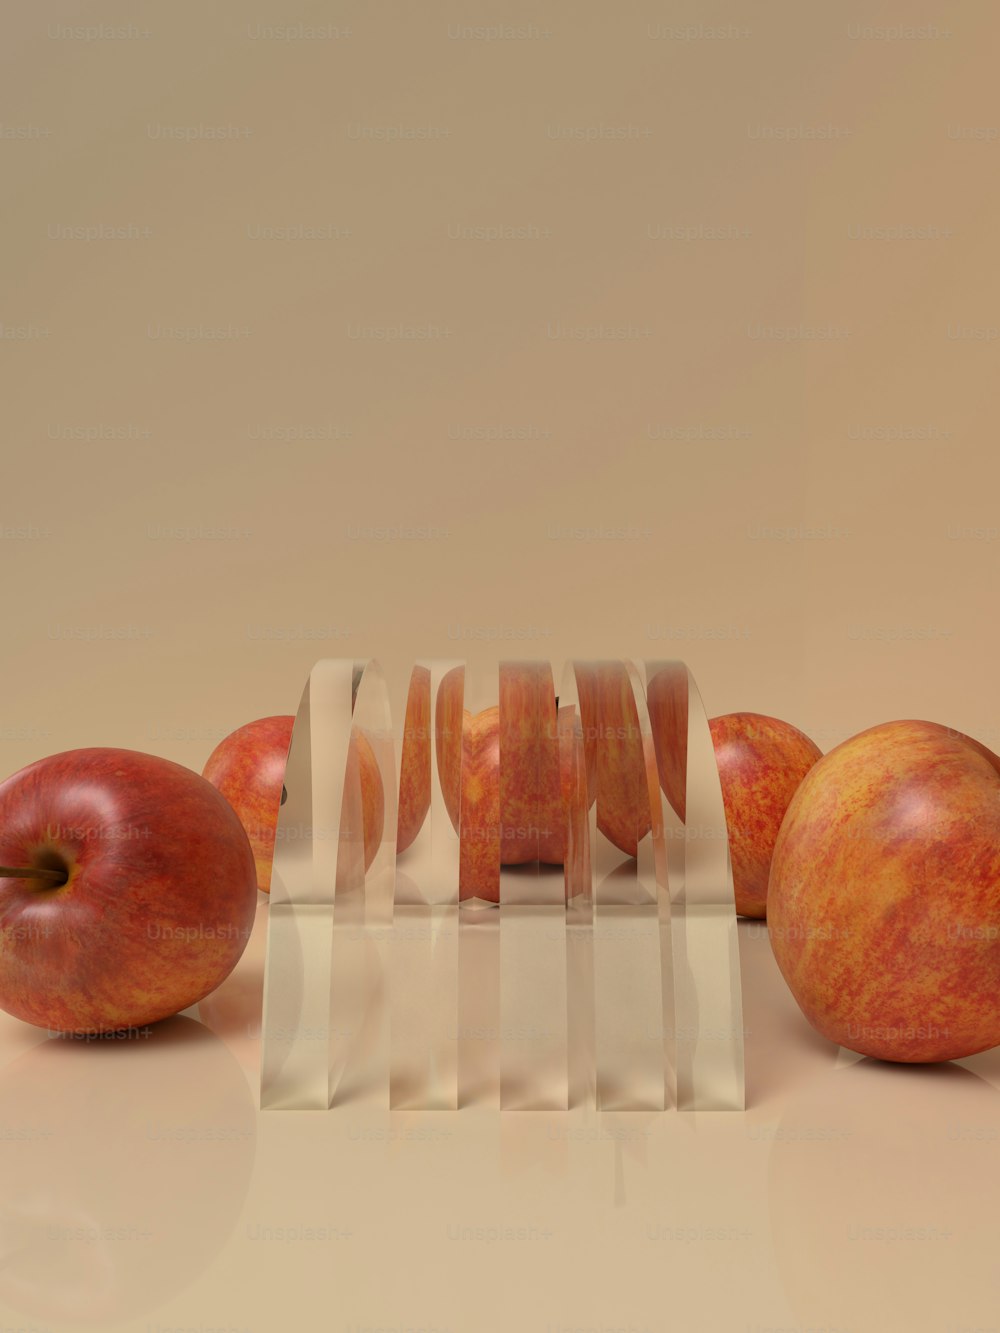 Un grupo de manzanas sentadas una encima de la otra